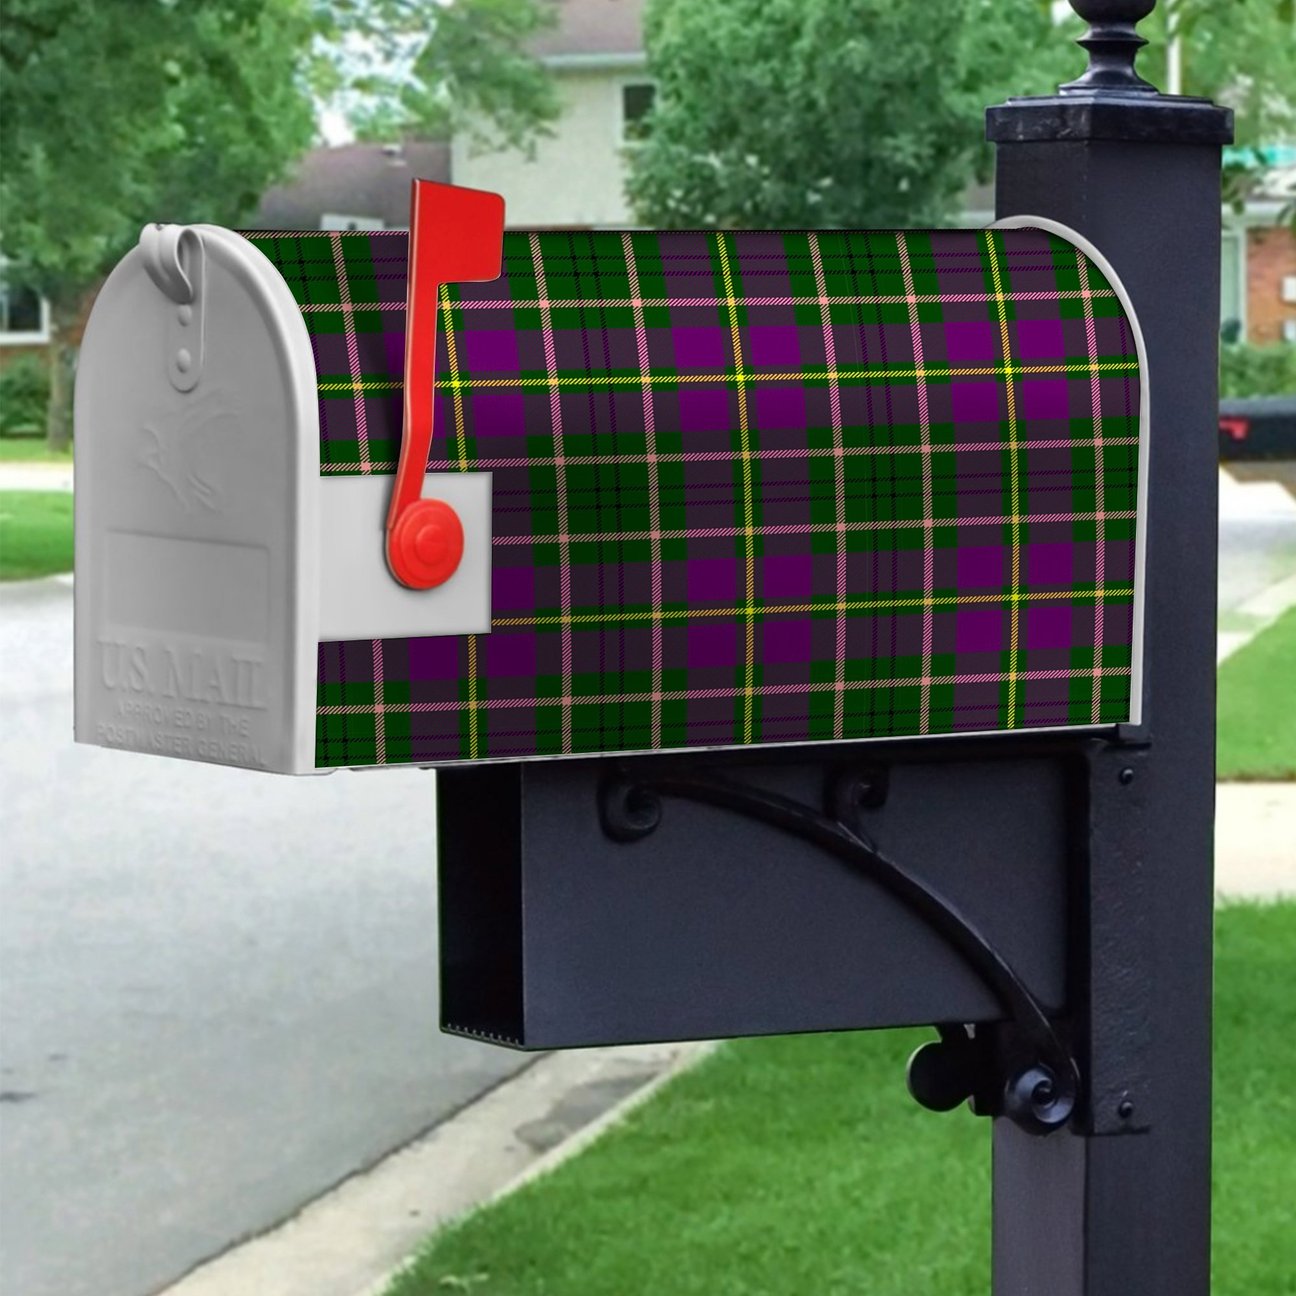 Tailyour Tartan Crest Mailbox